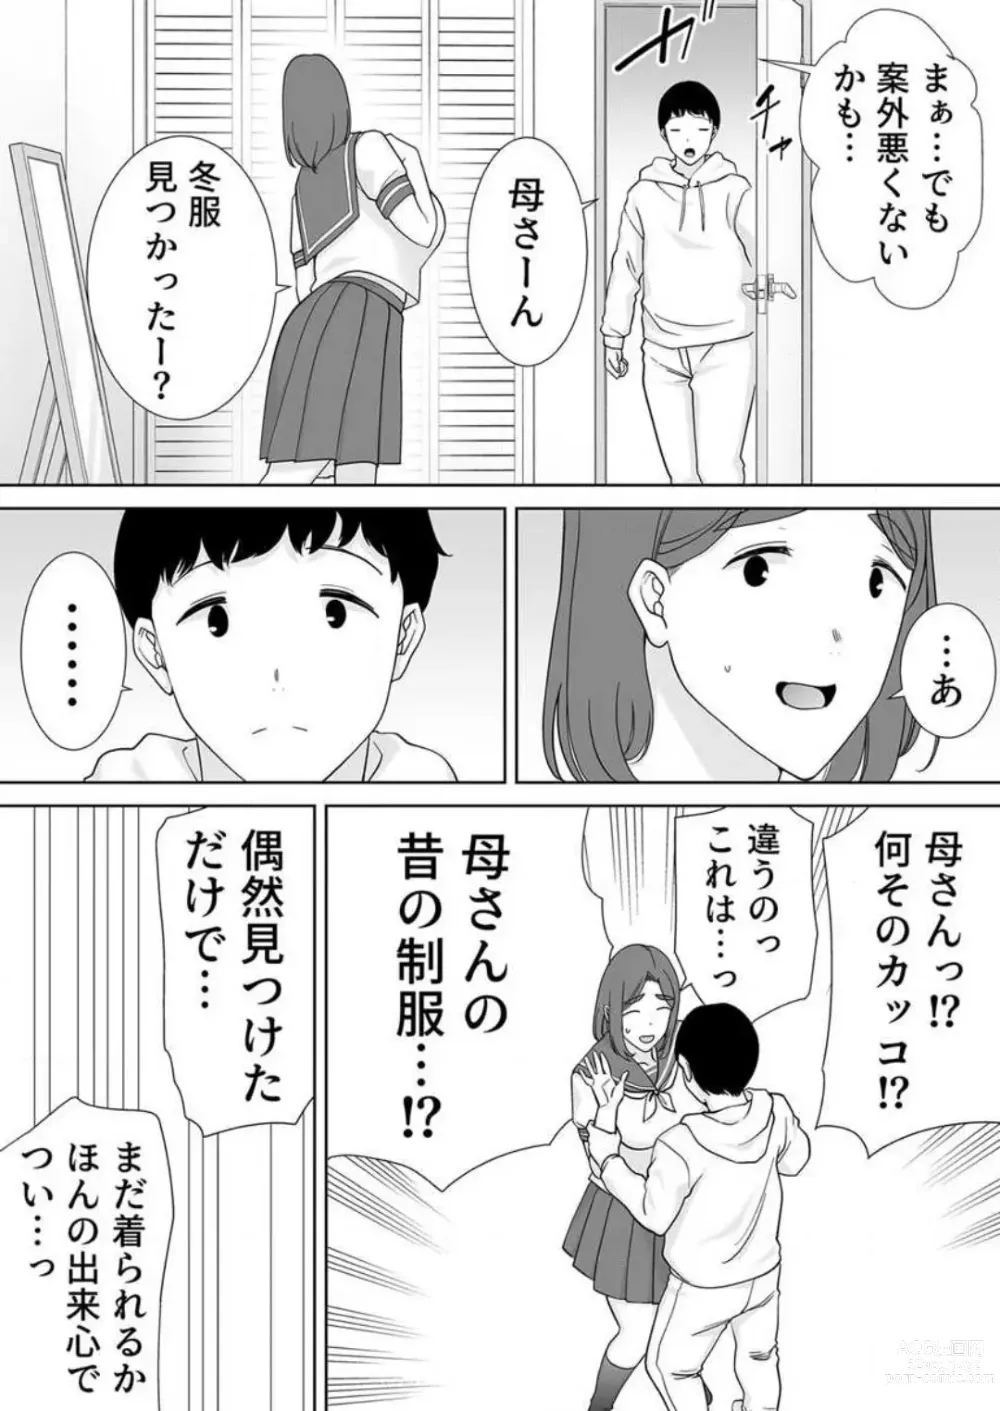 Page 292 of manga Boku no Kāsan De, Boku no Sukinahito. 1-12